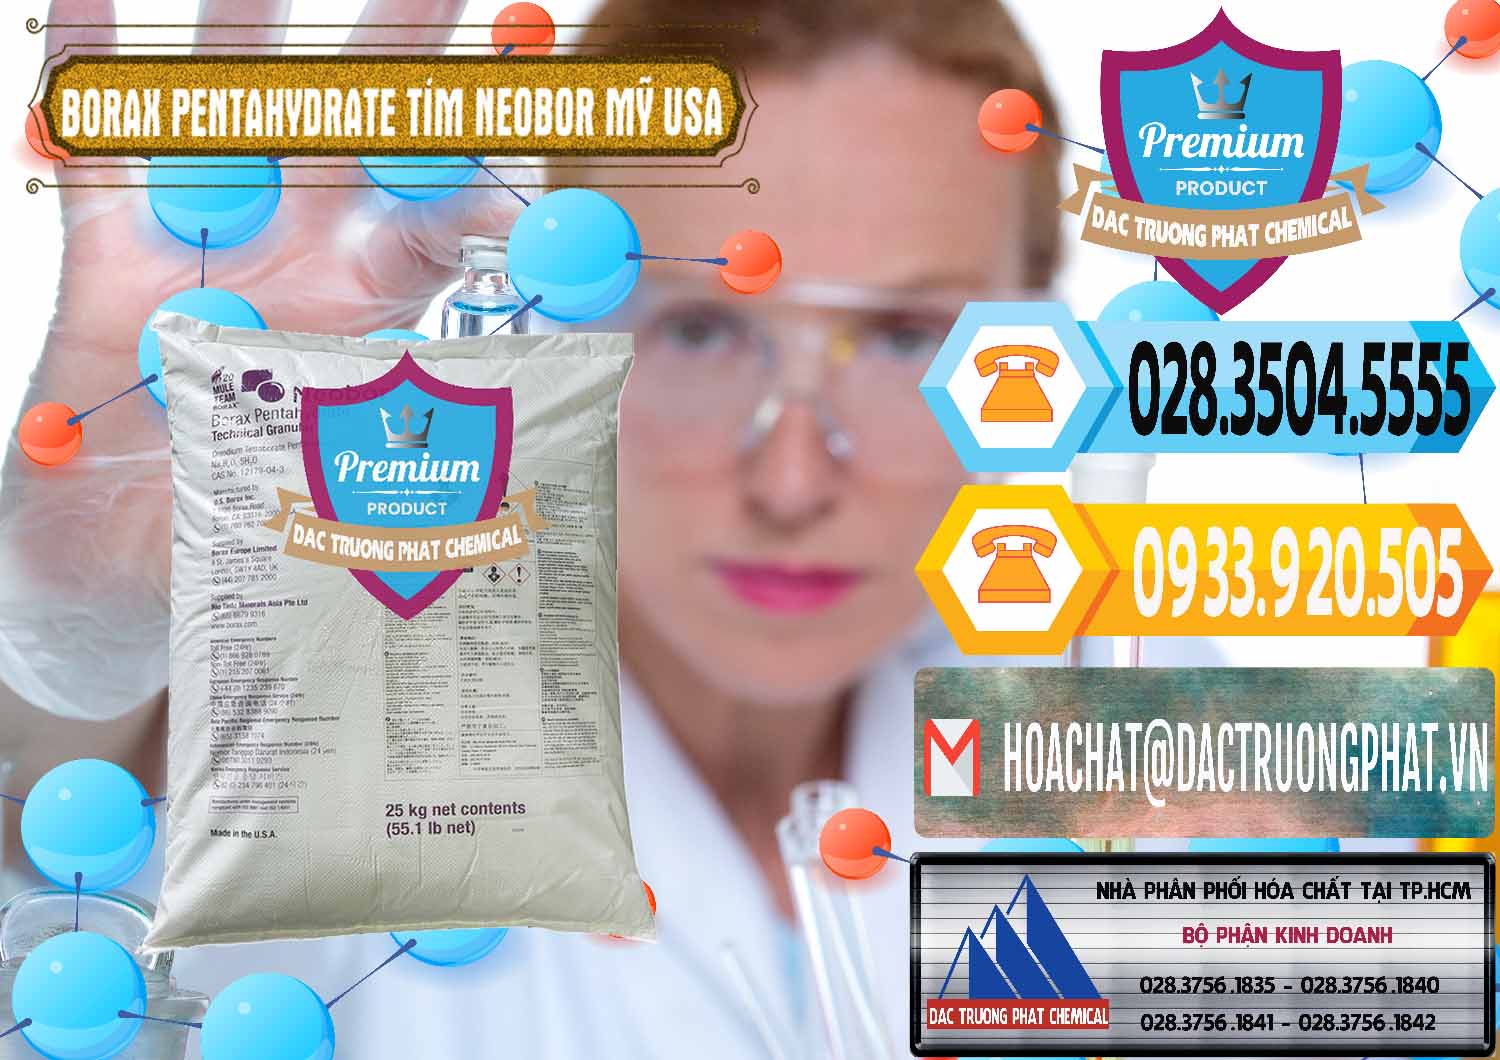 Bán - cung cấp Borax Pentahydrate Bao Tím Neobor TG Mỹ Usa - 0277 - Cty nhập khẩu - phân phối hóa chất tại TP.HCM - hoachattayrua.net